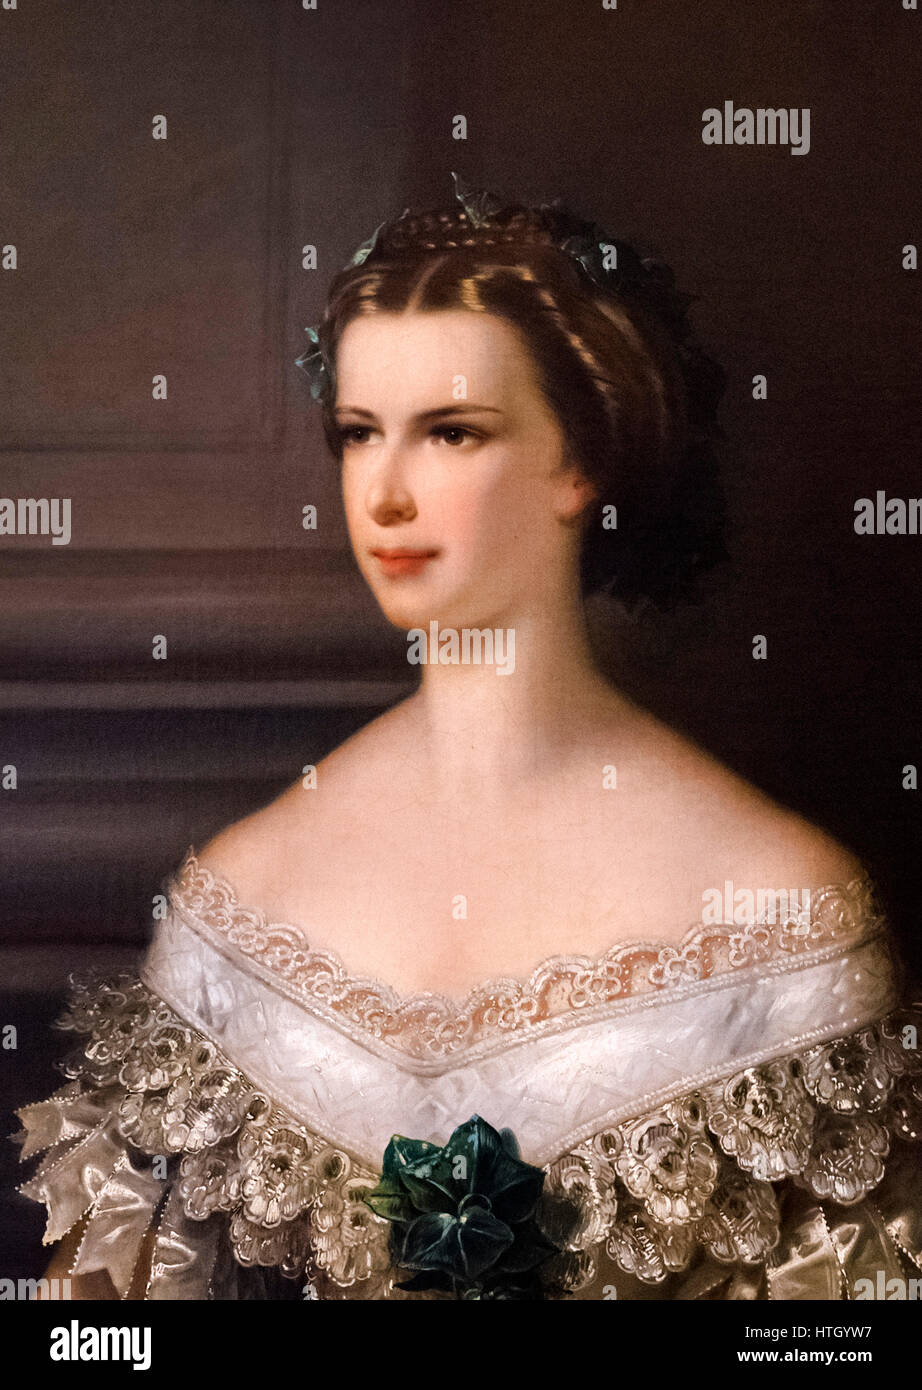 Sisi, retrato. La emperatriz Elisabeth de Austria (1837-1898), conocido como Sisi, esposa del emperador Franz Joseph I por Franz Schrotzberg pintura, óleo sobre lienzo, 1856. Detalle de una pintura de mayor tamaño, HTGYW6. Foto de stock